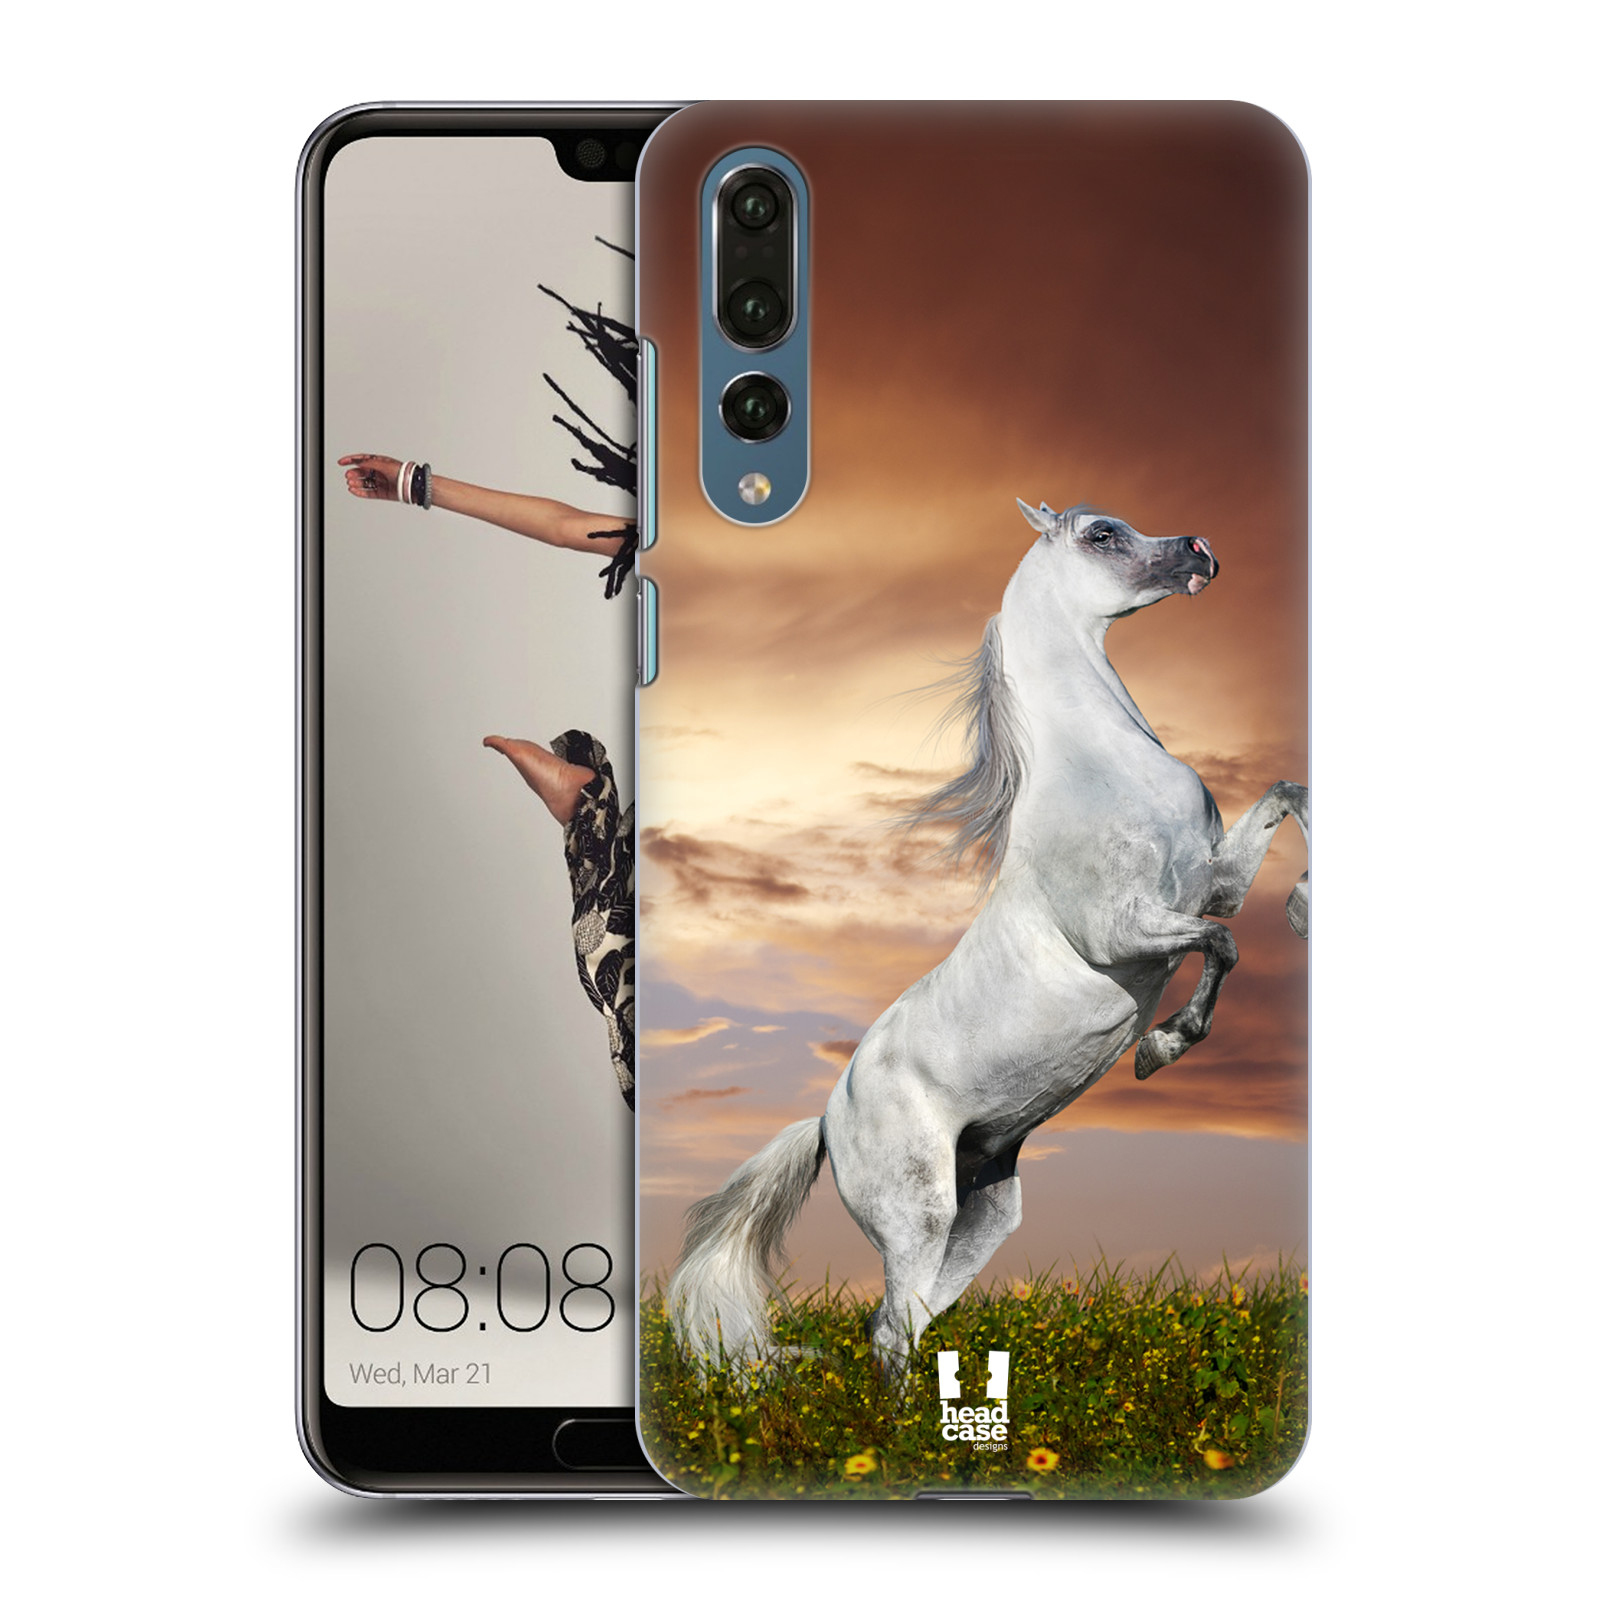 Zadní obal pro mobil Huawei P20 PRO - HEAD CASE - Svět zvířat divoký kůň